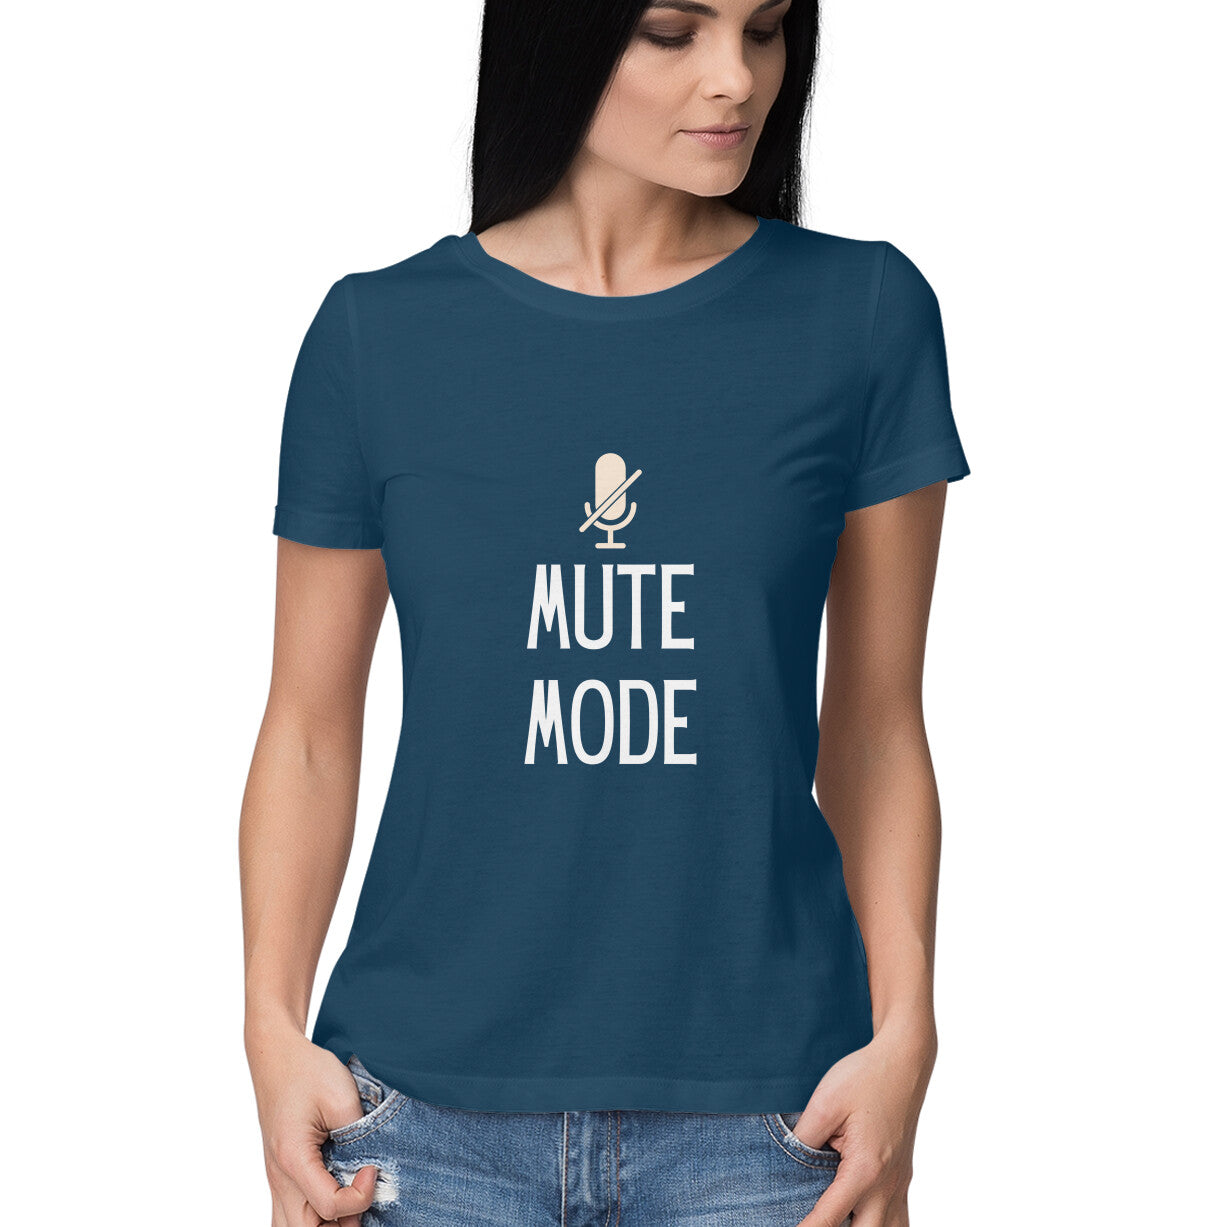 Mute mode Women's tee